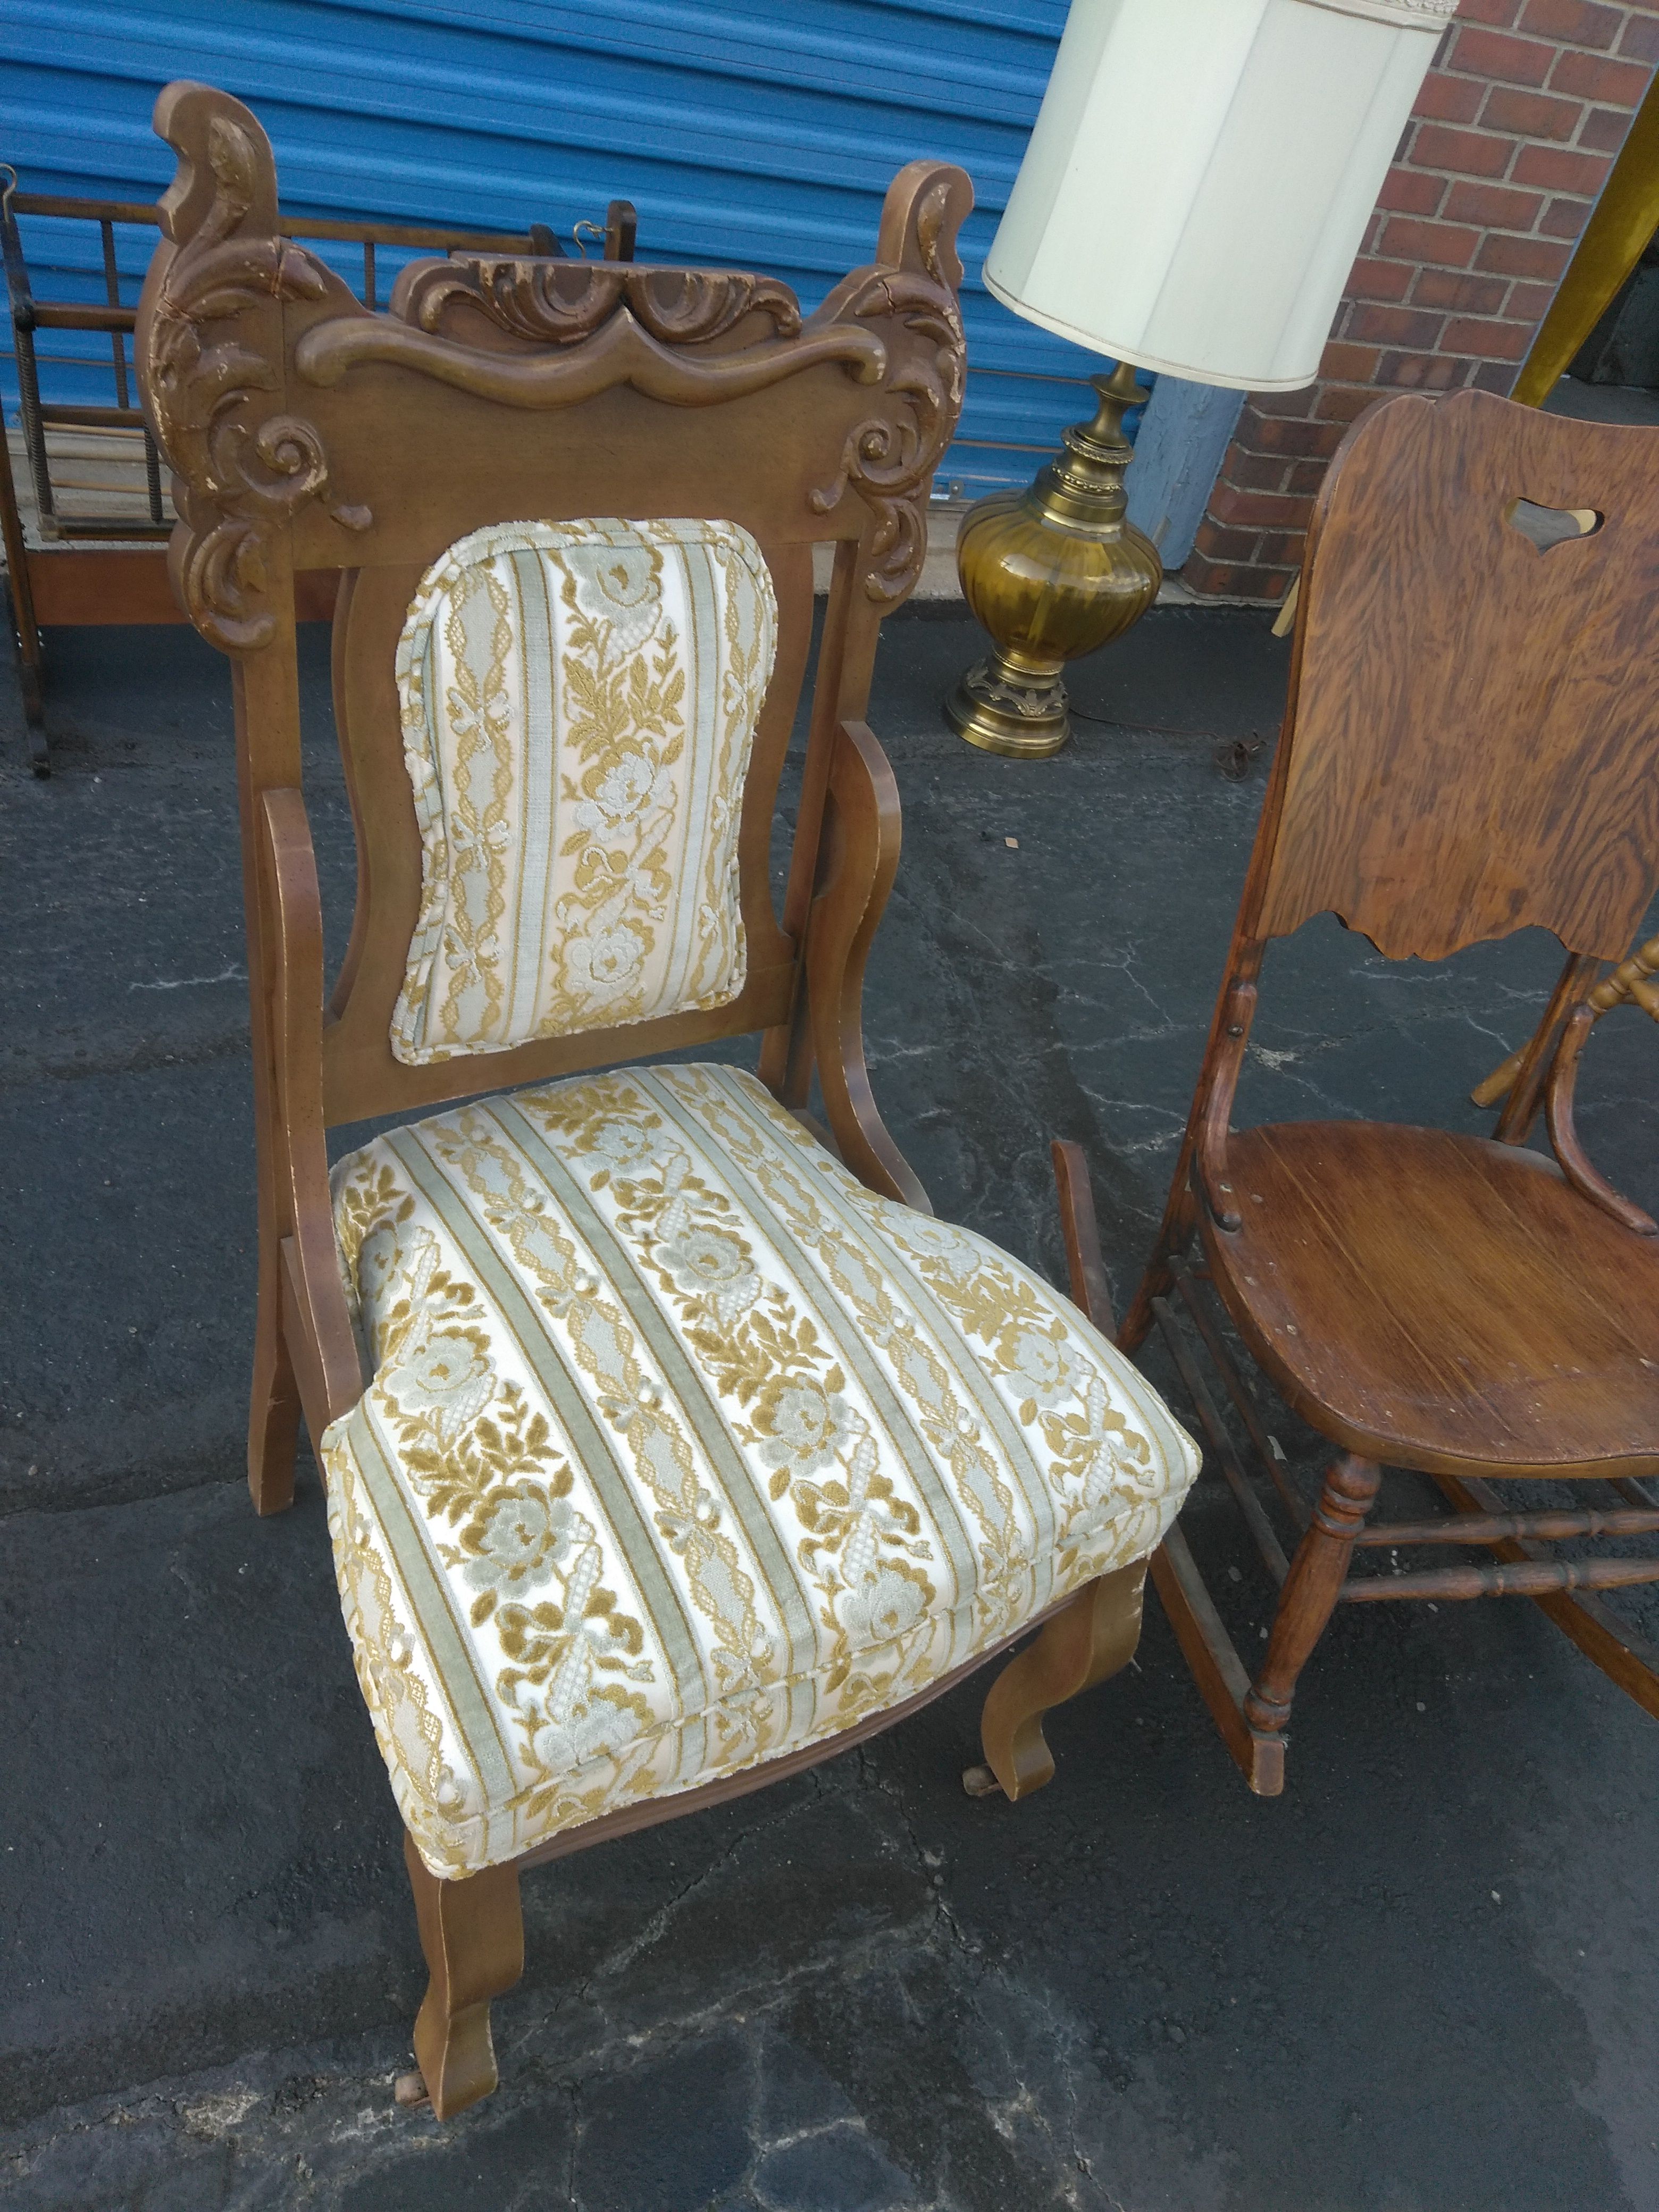 !!! Vintage chair or rocker $10 !!!